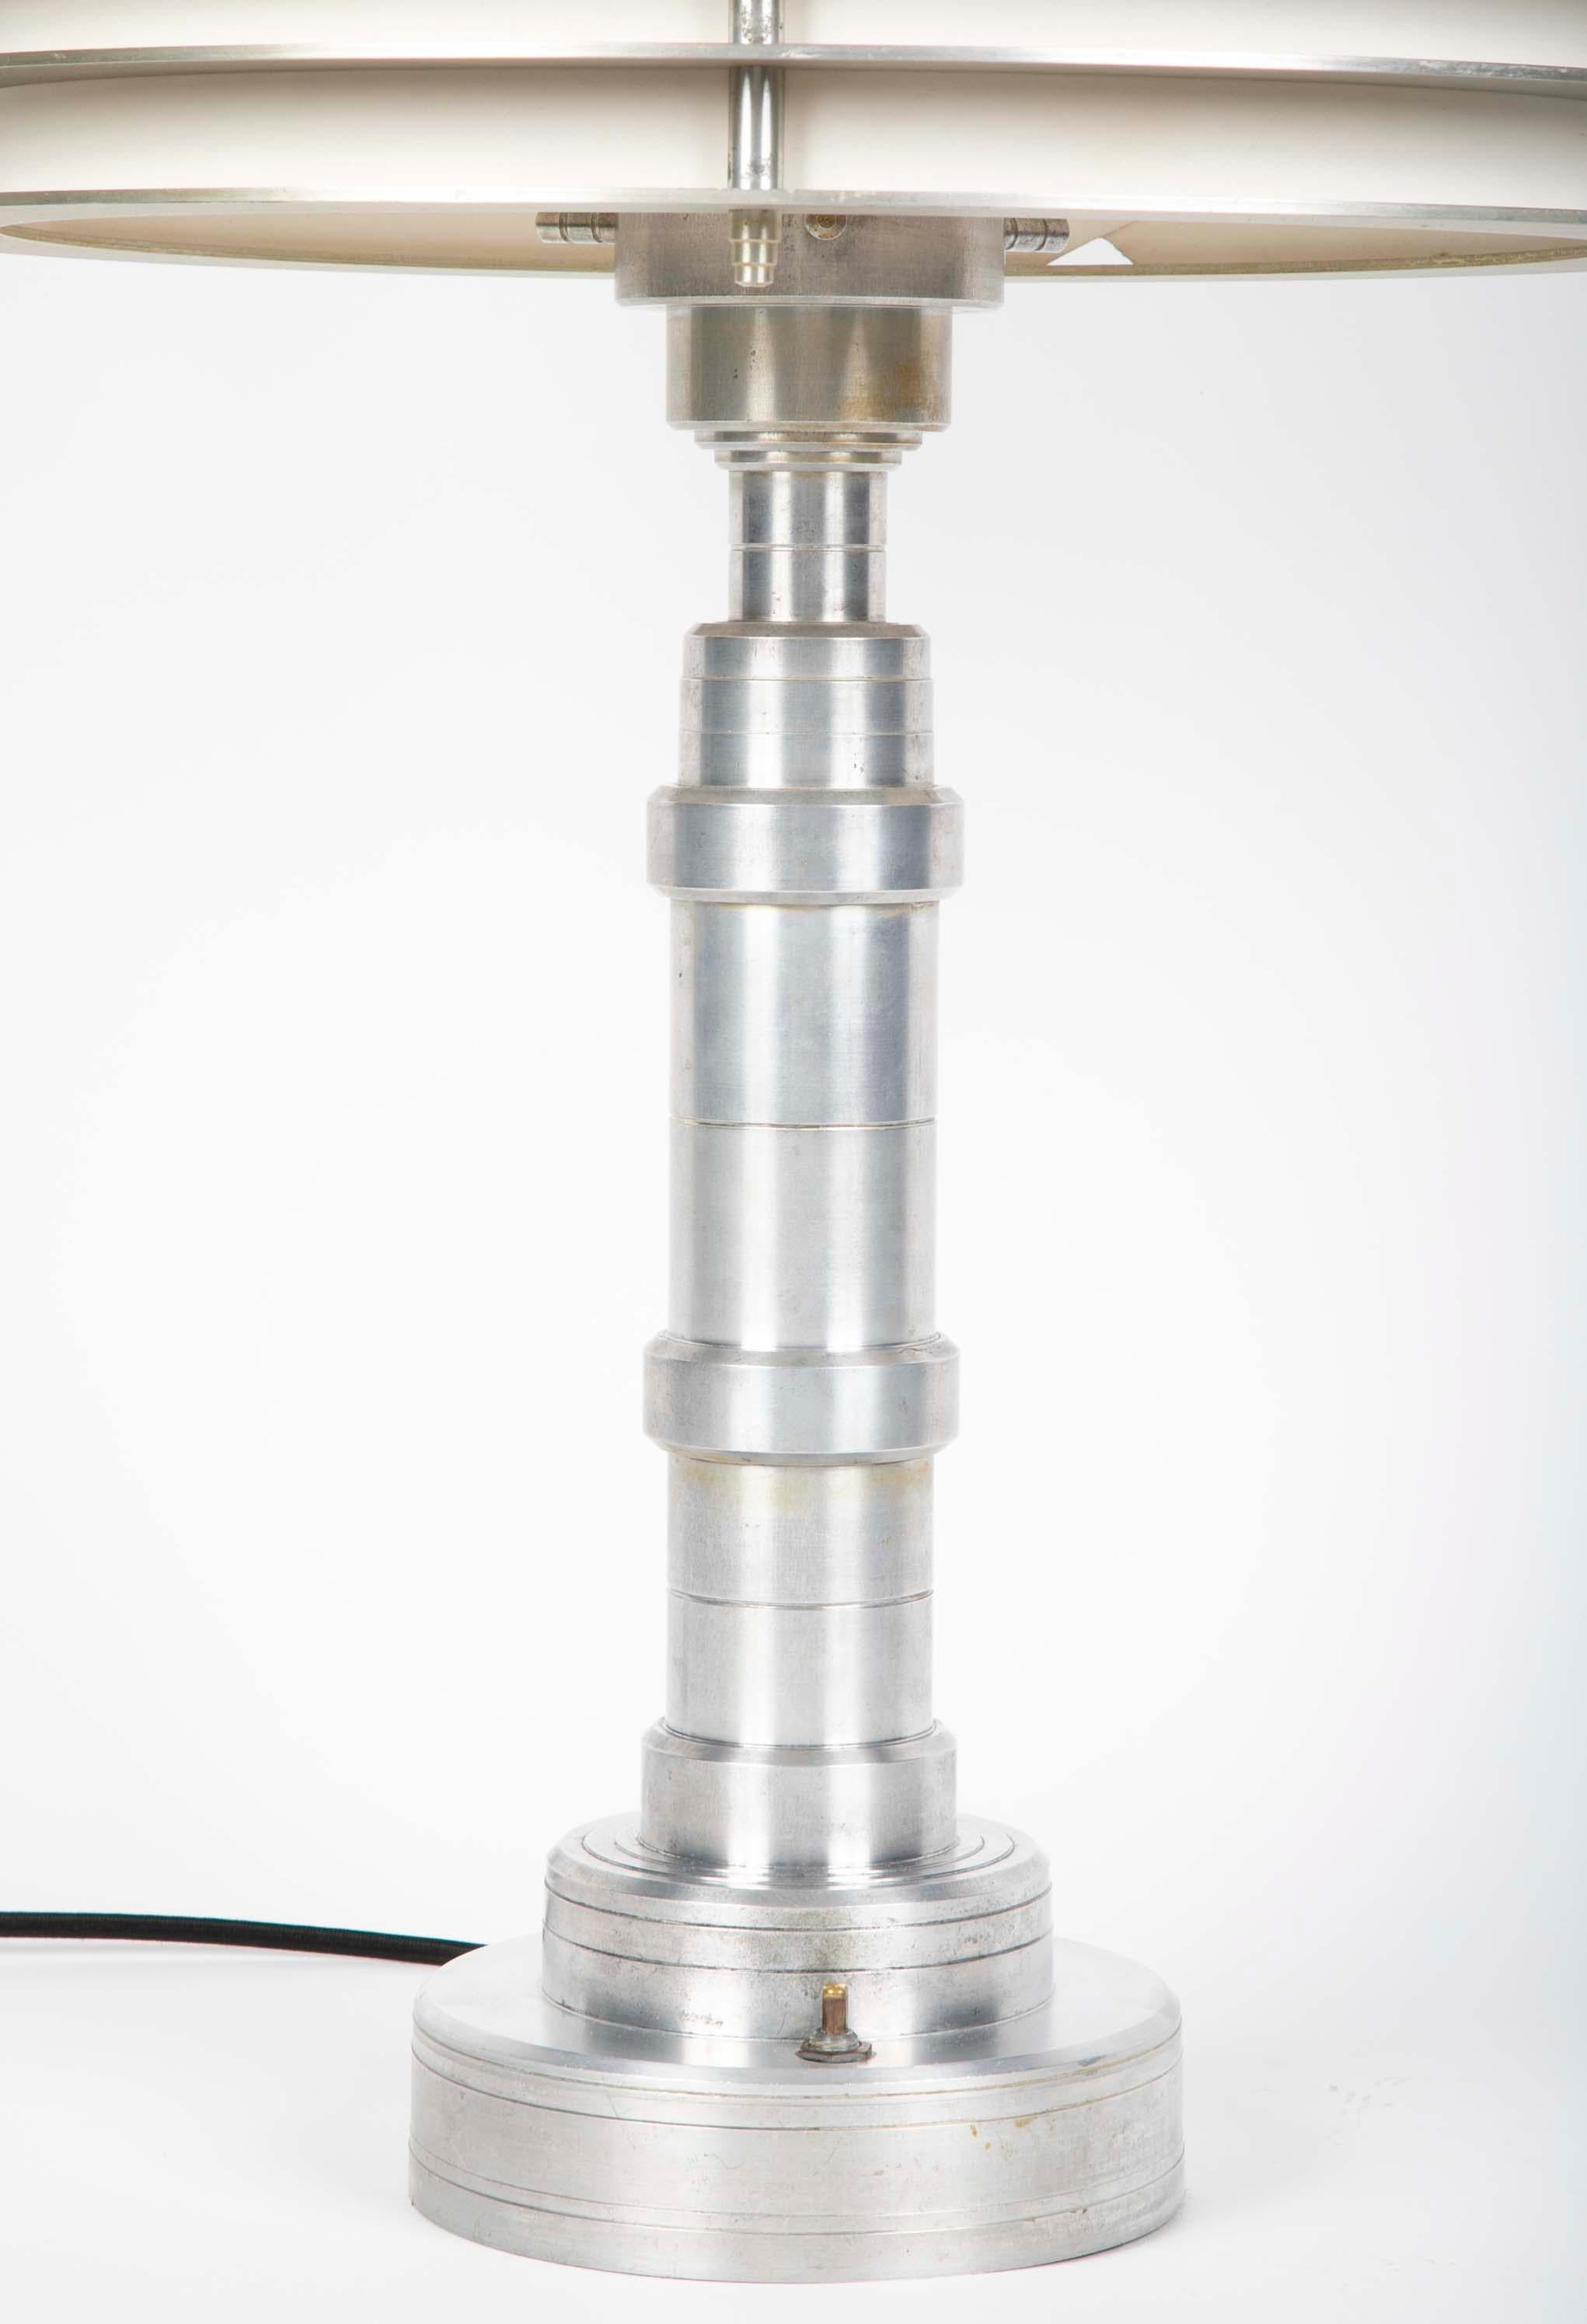 Eine eloxierte Aluminium Art Deco Pattyn Produkte Tischlampe zugeschrieben Walter Von Nessen. Die Lampe wurde restauriert und das ursprüngliche MATERIAL des Schirms wurde durch Pergament ersetzt. Das Original-Farbmaterial ist in seinem